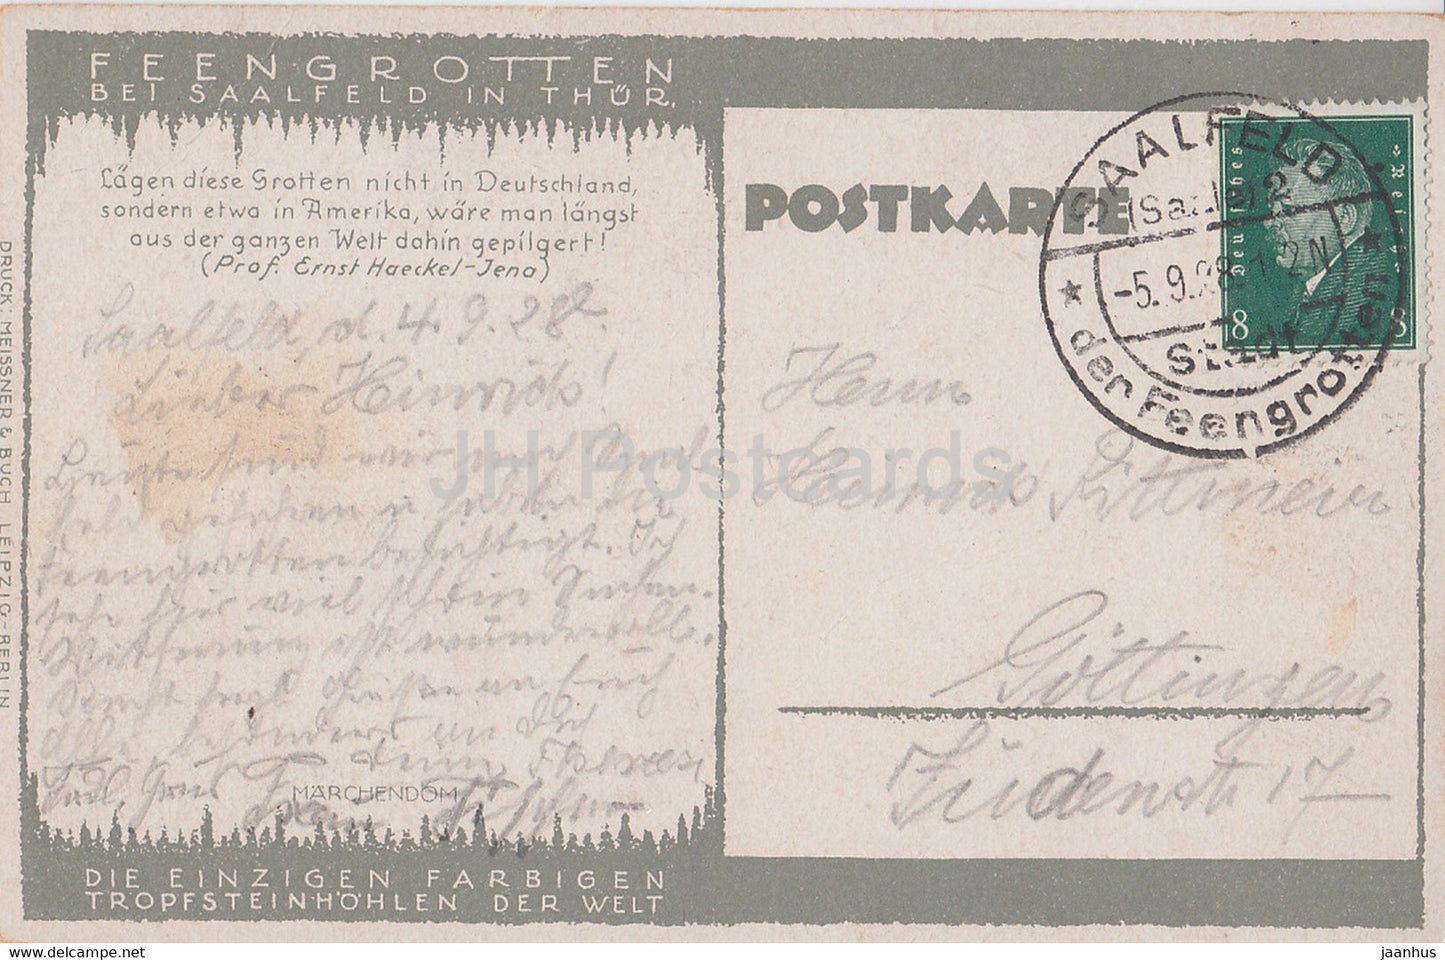 Feengrotten bei Saalfeld in Thur - Marchendom - Höhle - alte Postkarte - 1928 - Deutschland - gebraucht